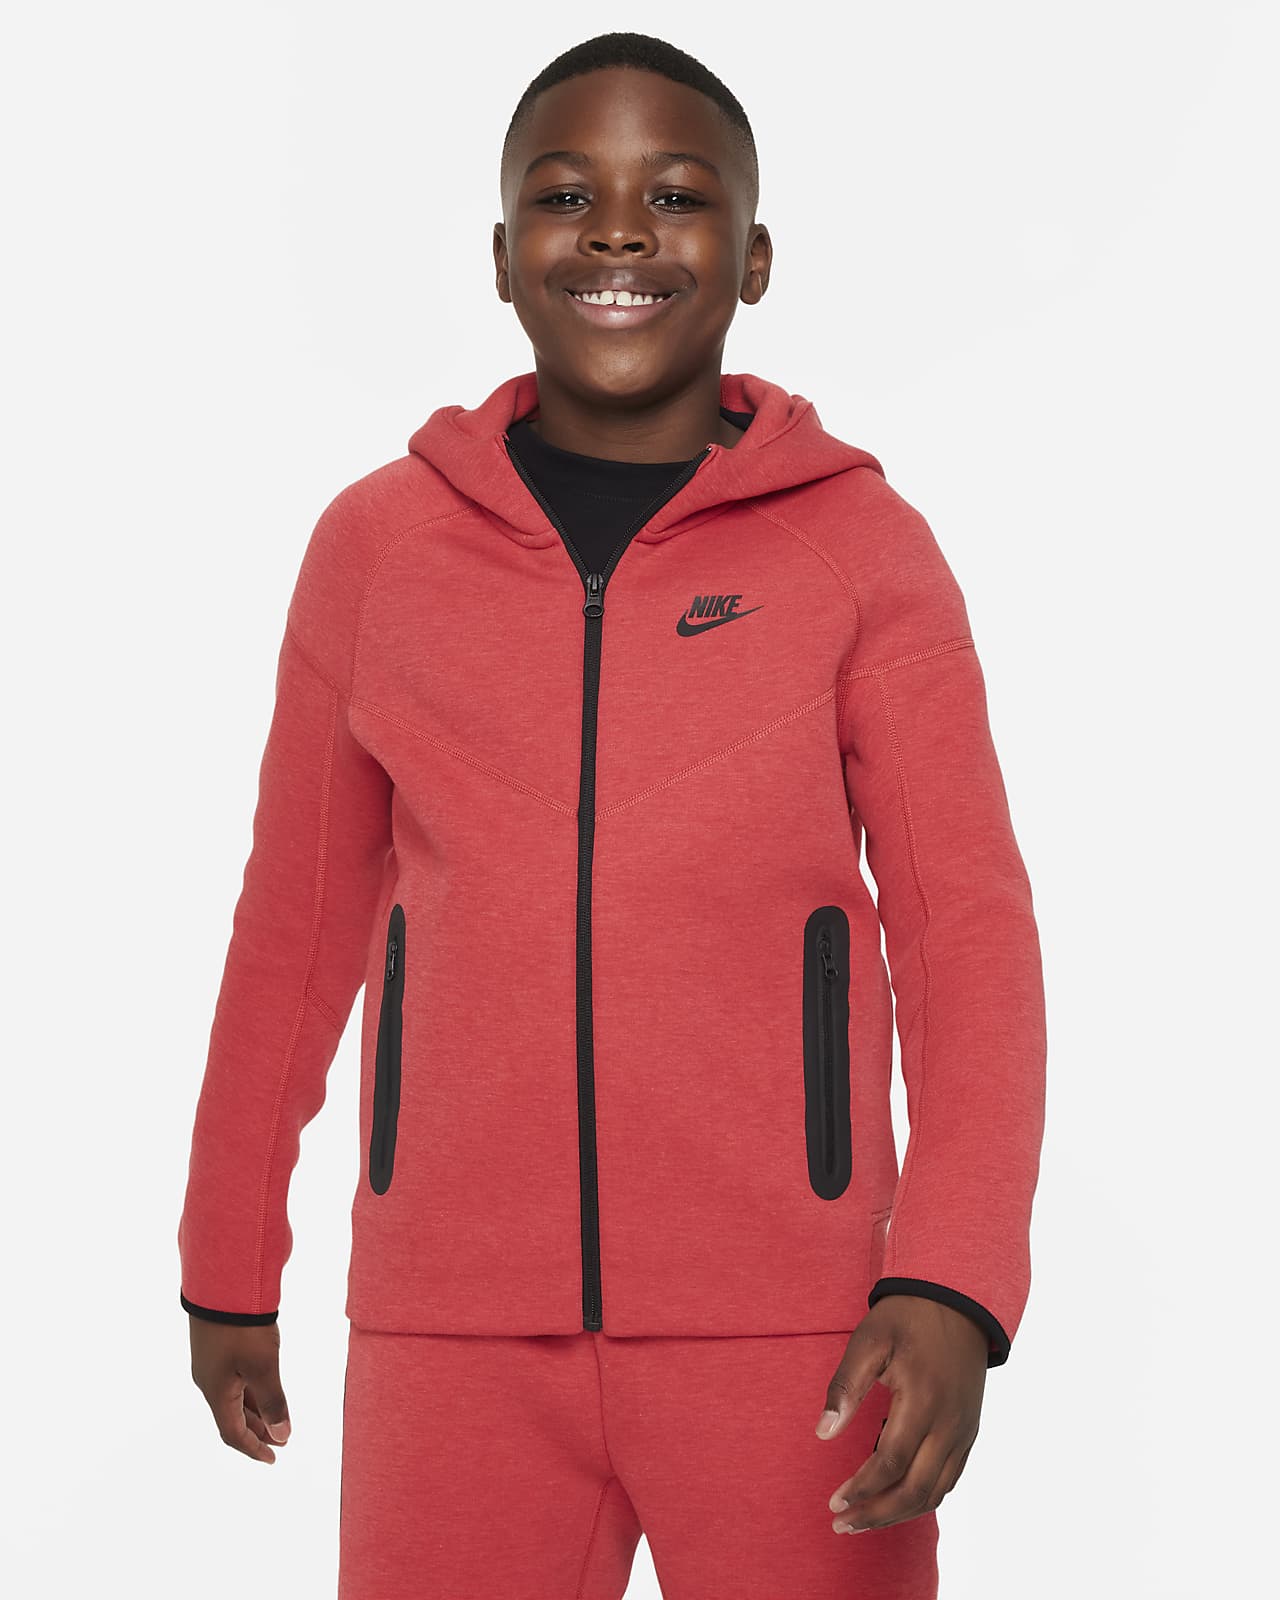 Bluza z kapturem i zamkiem na całej długości dla dużych dzieci (chłopców) Nike Sportswear Tech Fleece (szersze rozmiary)